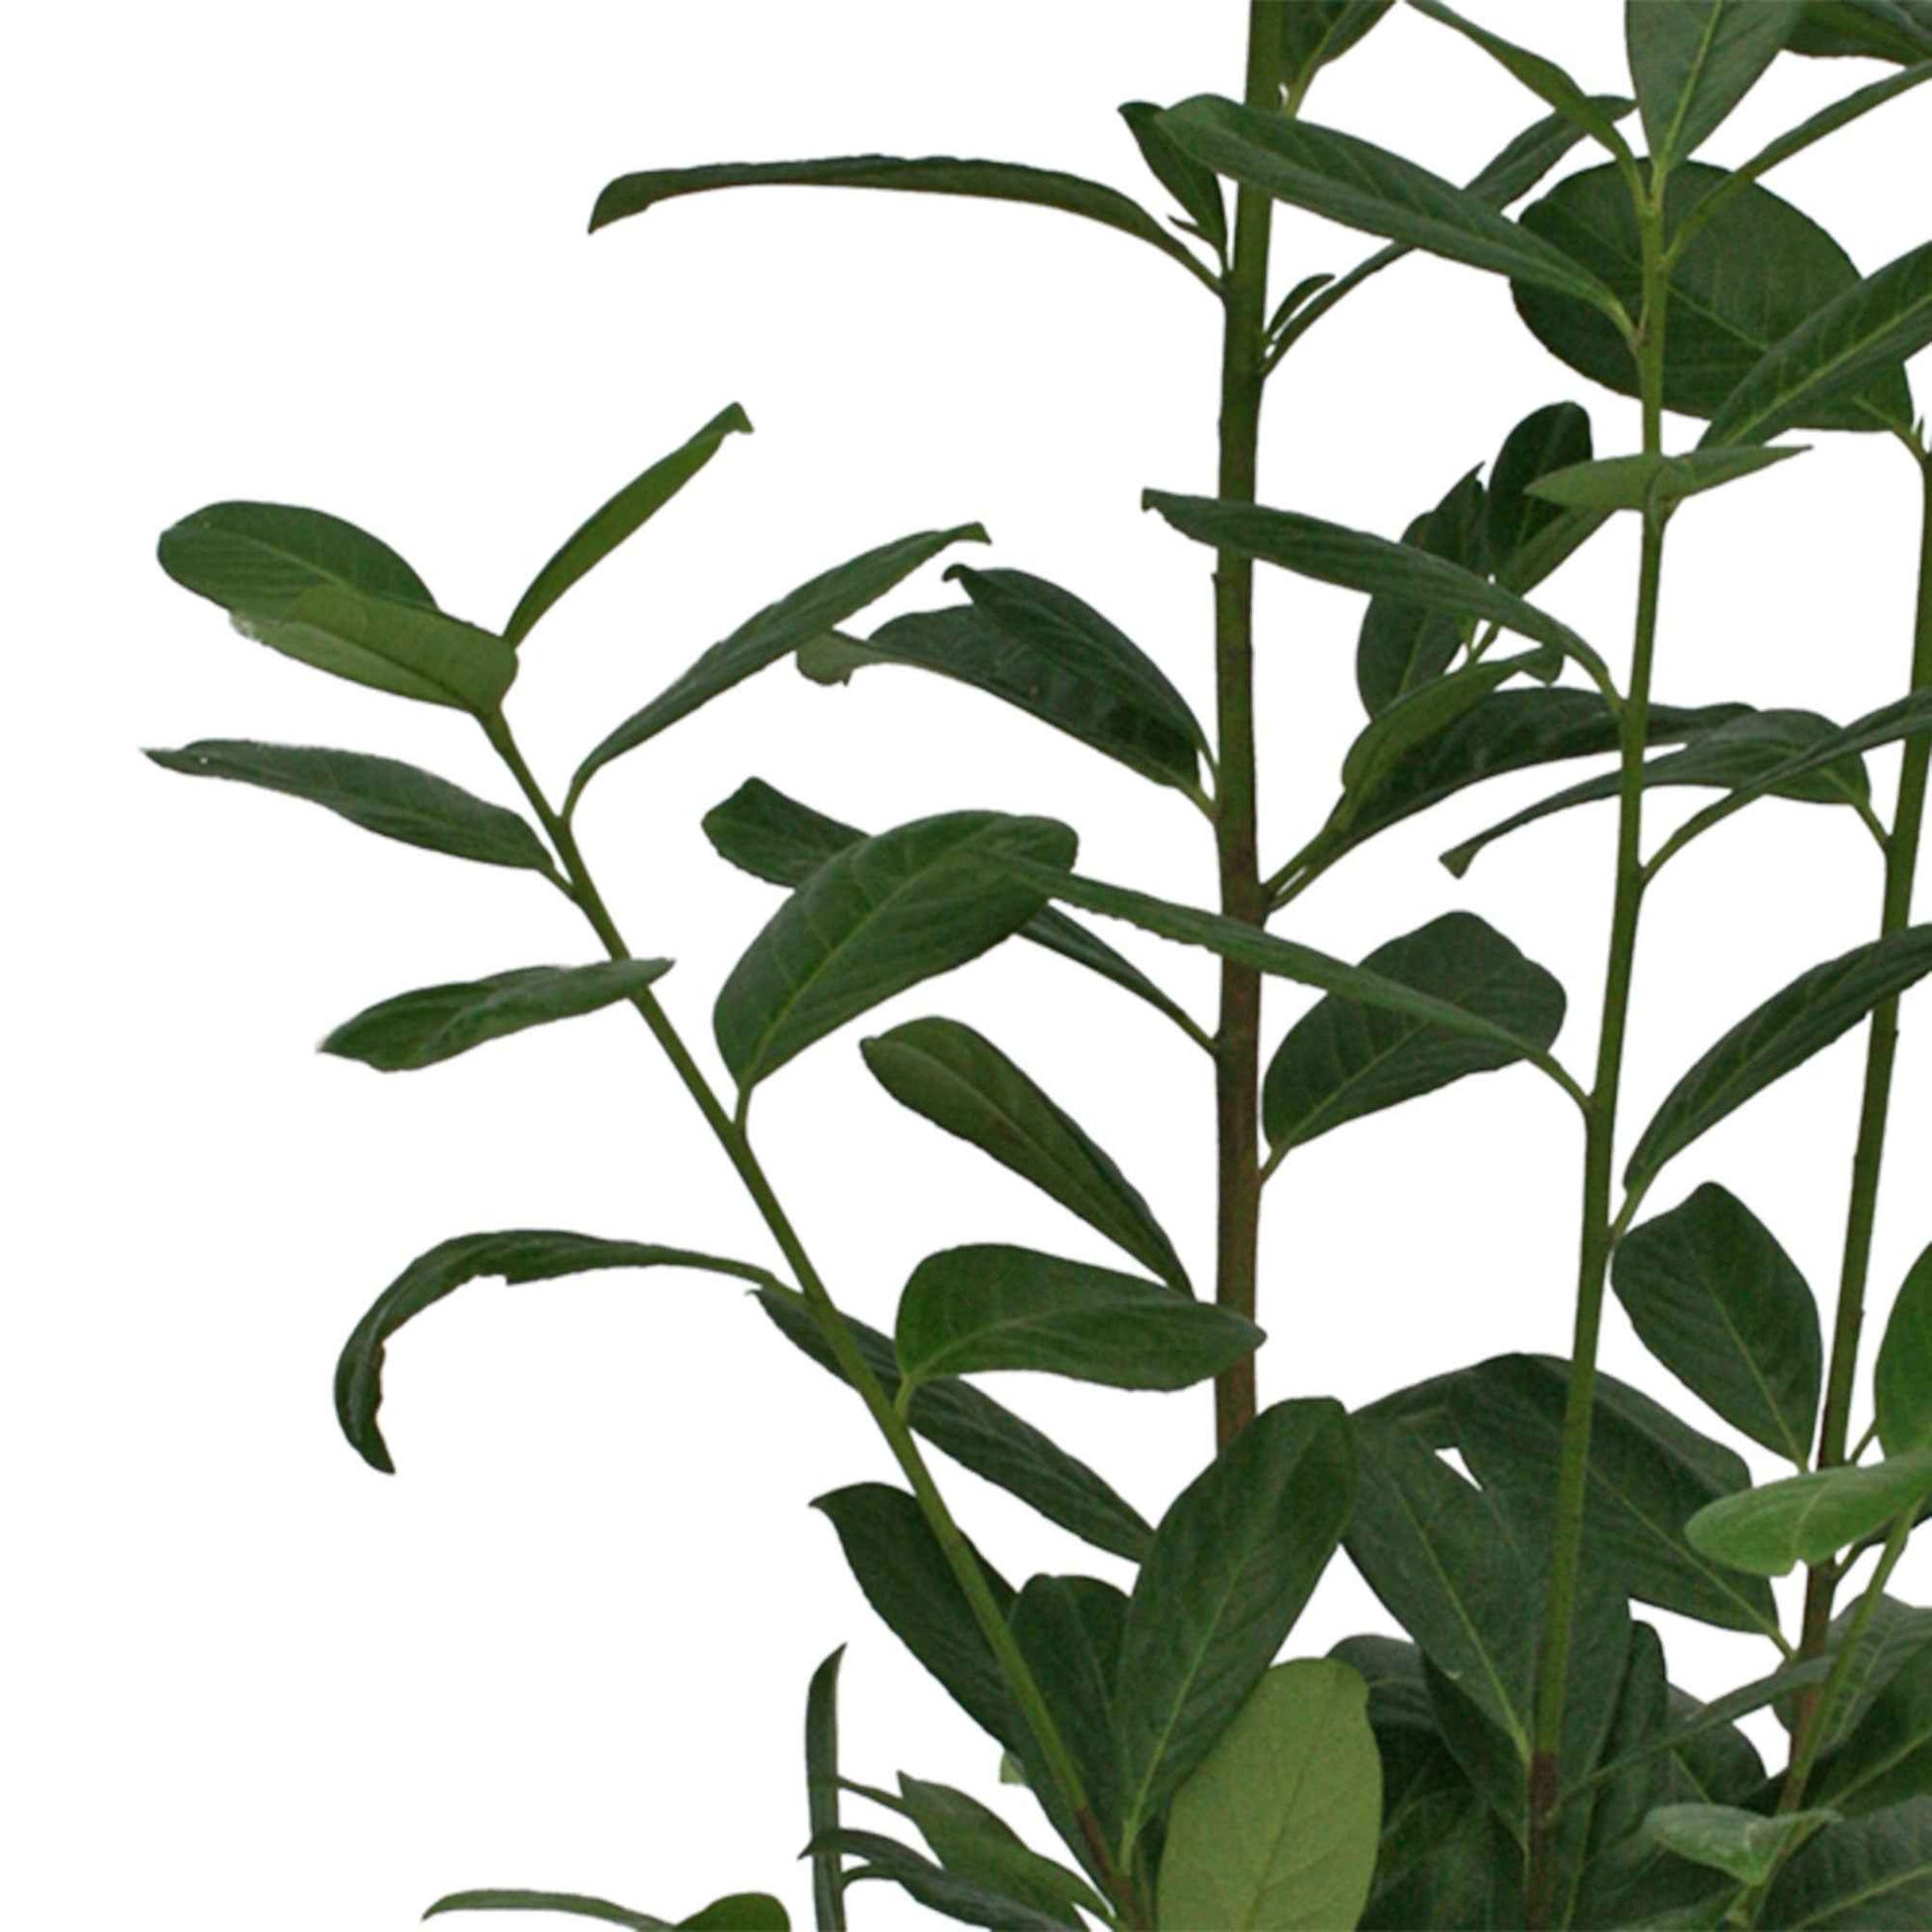 Lorbeerkirsche Prunus 'Rotundifolia' - Winterhart - Hecken